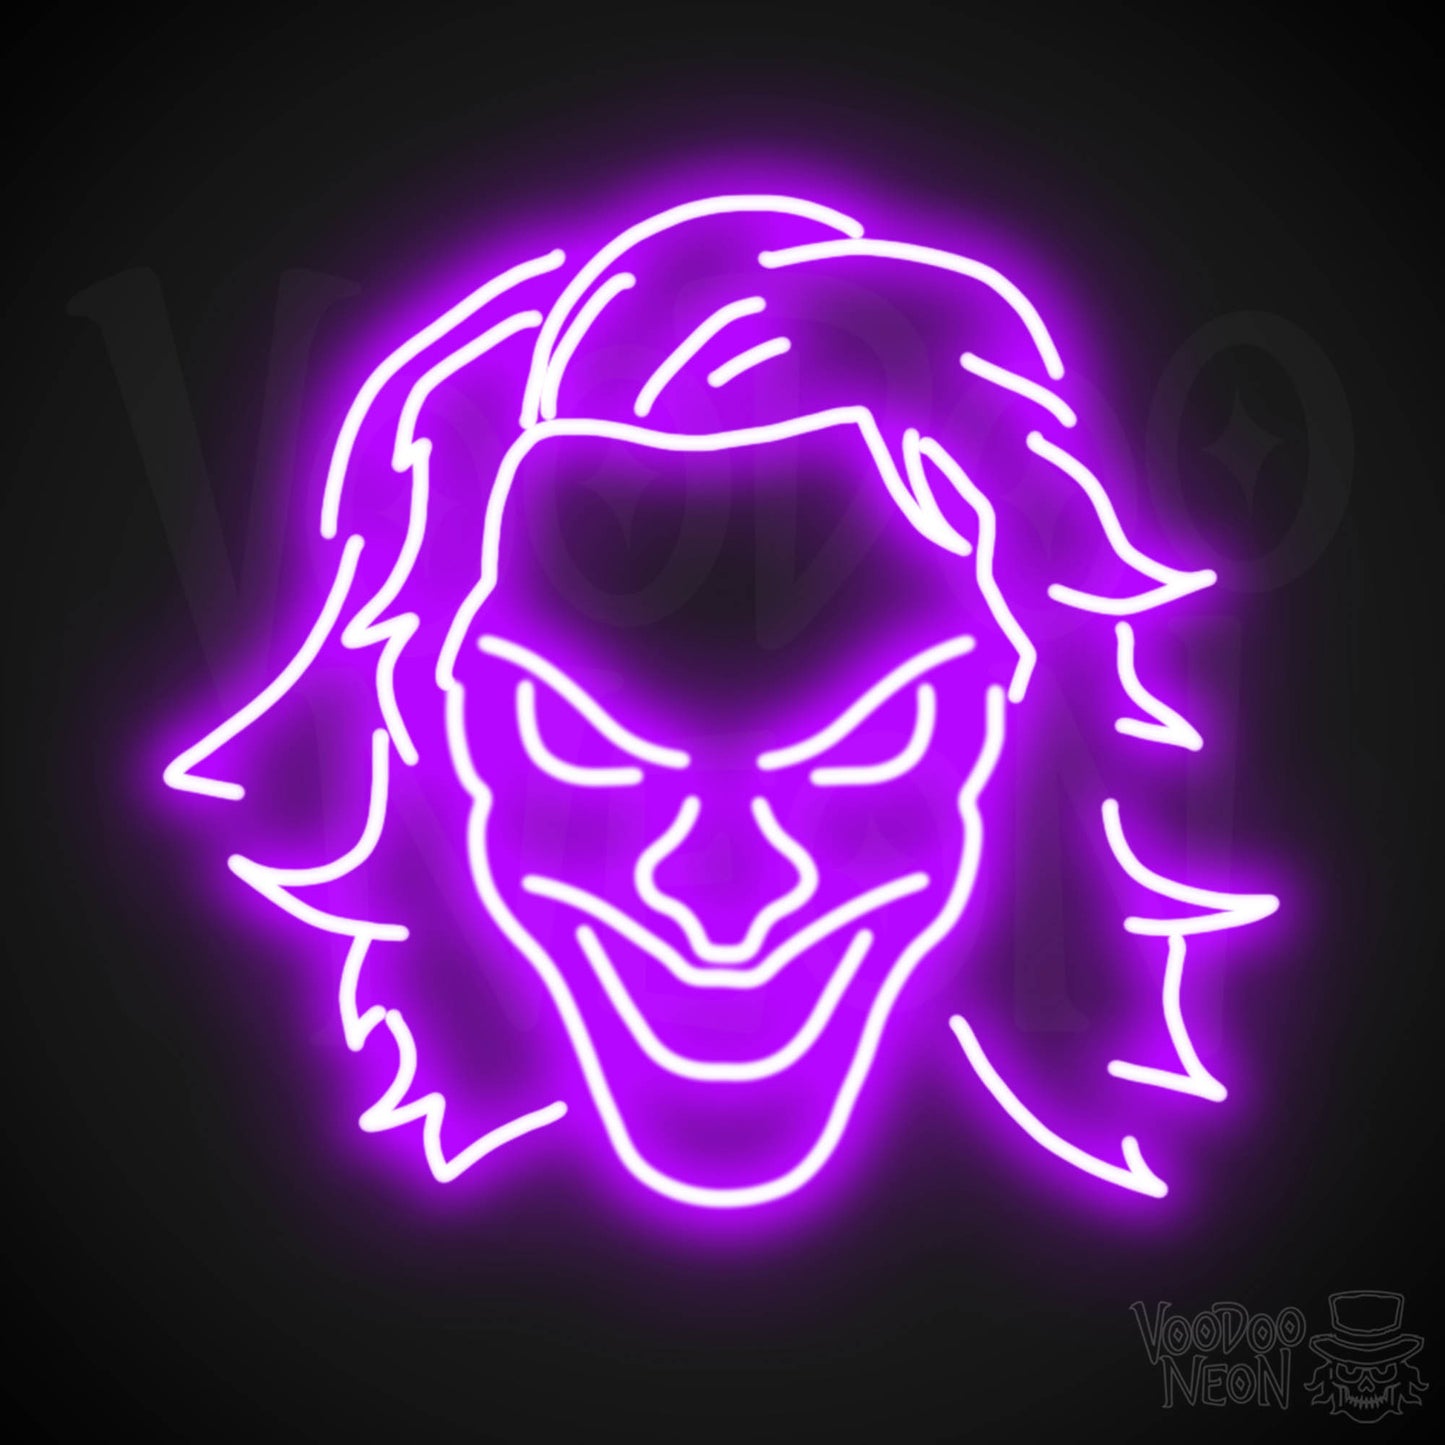 Joker Neon Sign - Neon Joker Sign - Joker LED Wall Art - Color Purple